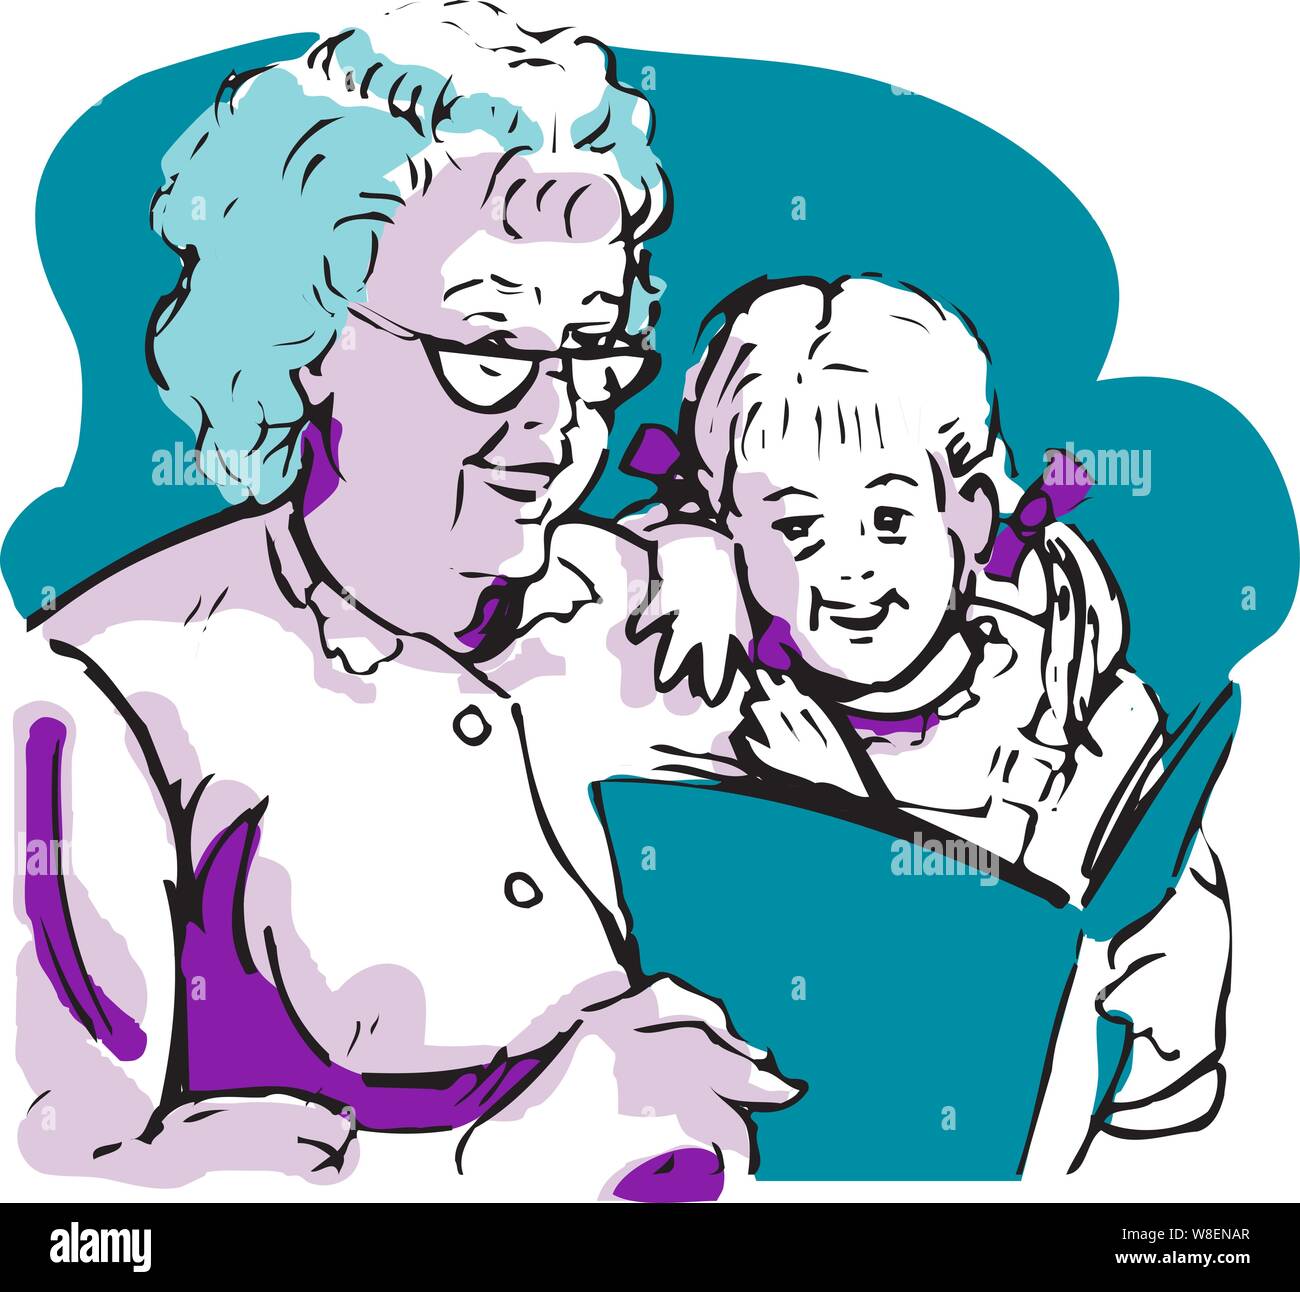 La abuela vistiendo viejas gafas de lectura lee un libro de cuentos a una niña con ribboned ponytails Ilustración del Vector